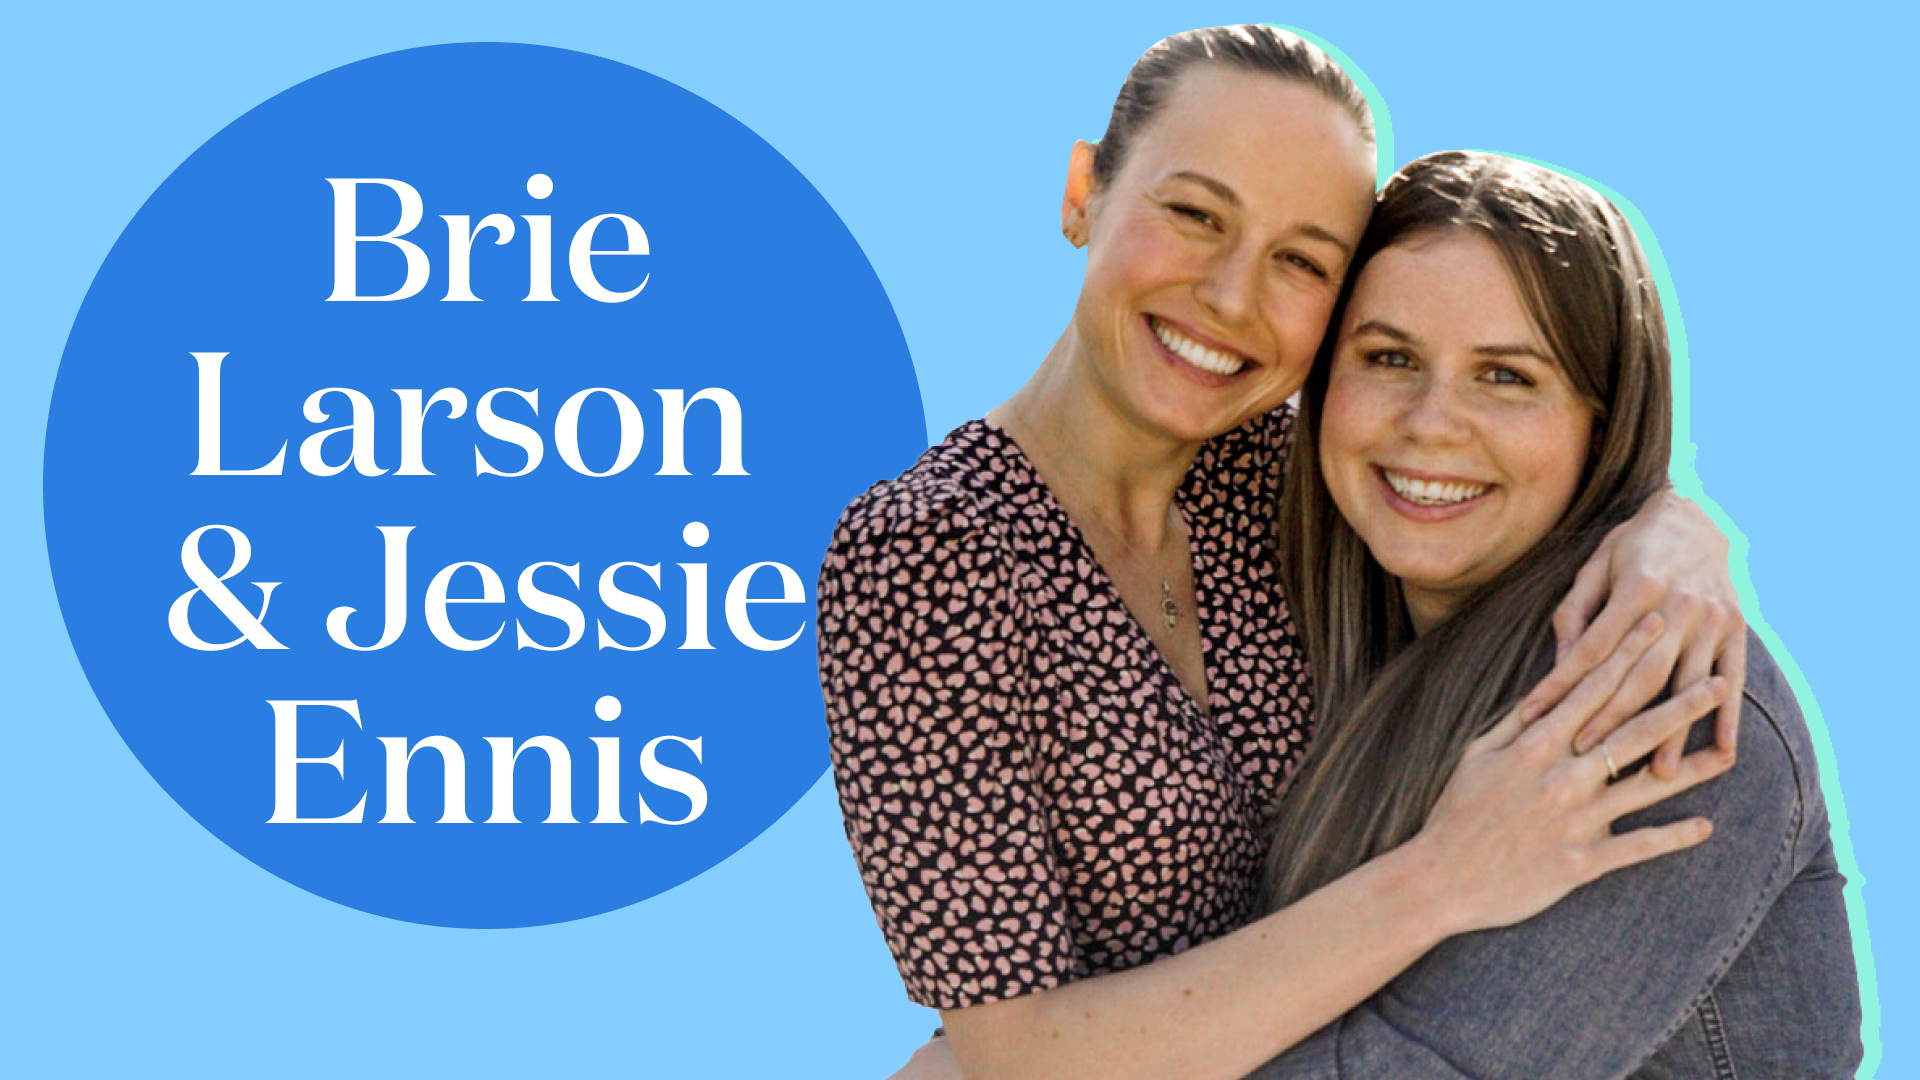 Skimm Her Life: Brie Larson and Jessie Ennis